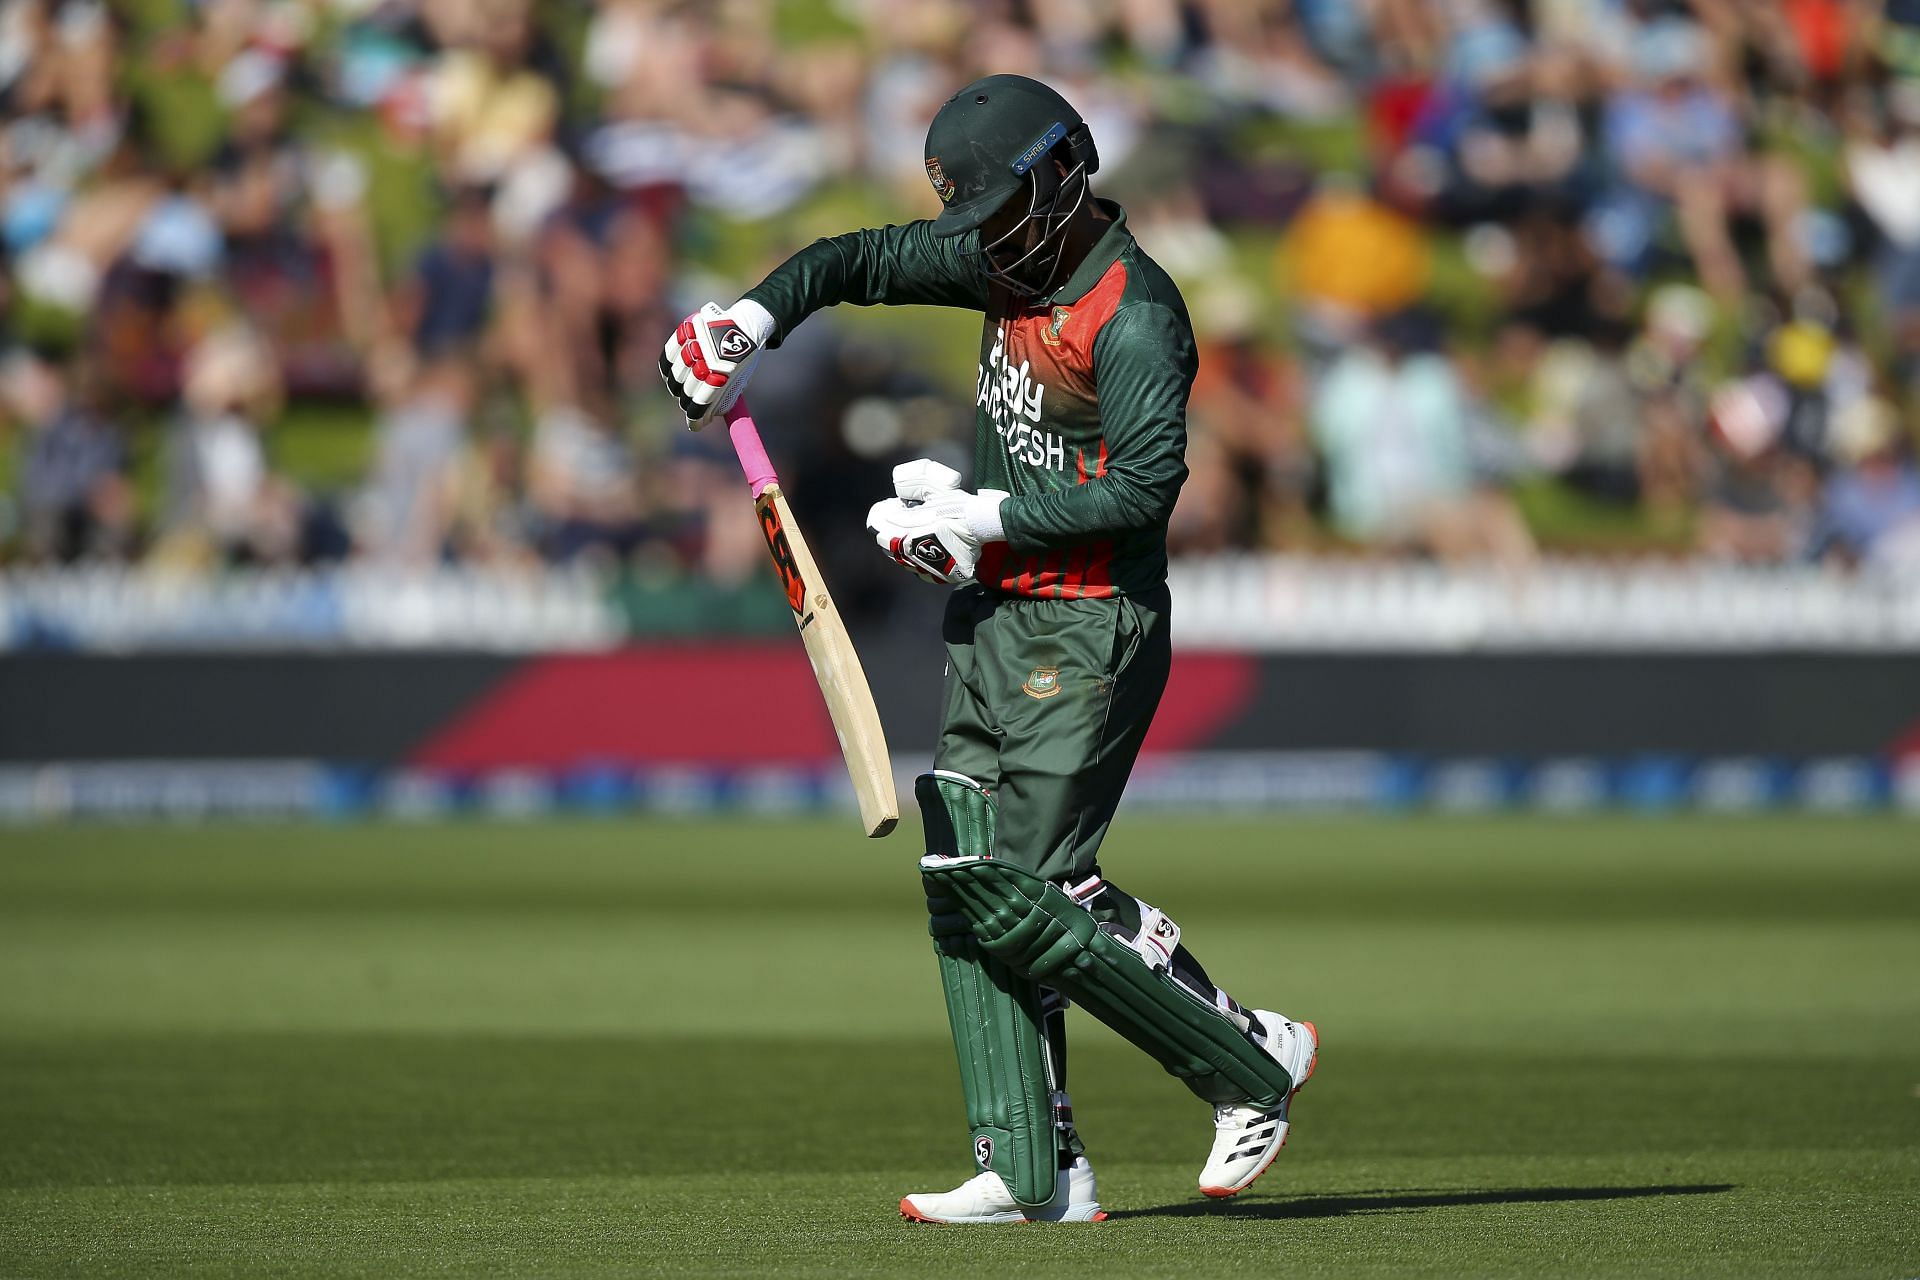 New Zealand v Bangladesh - ODI Game 3 (Image Courtesy: Getty Images)